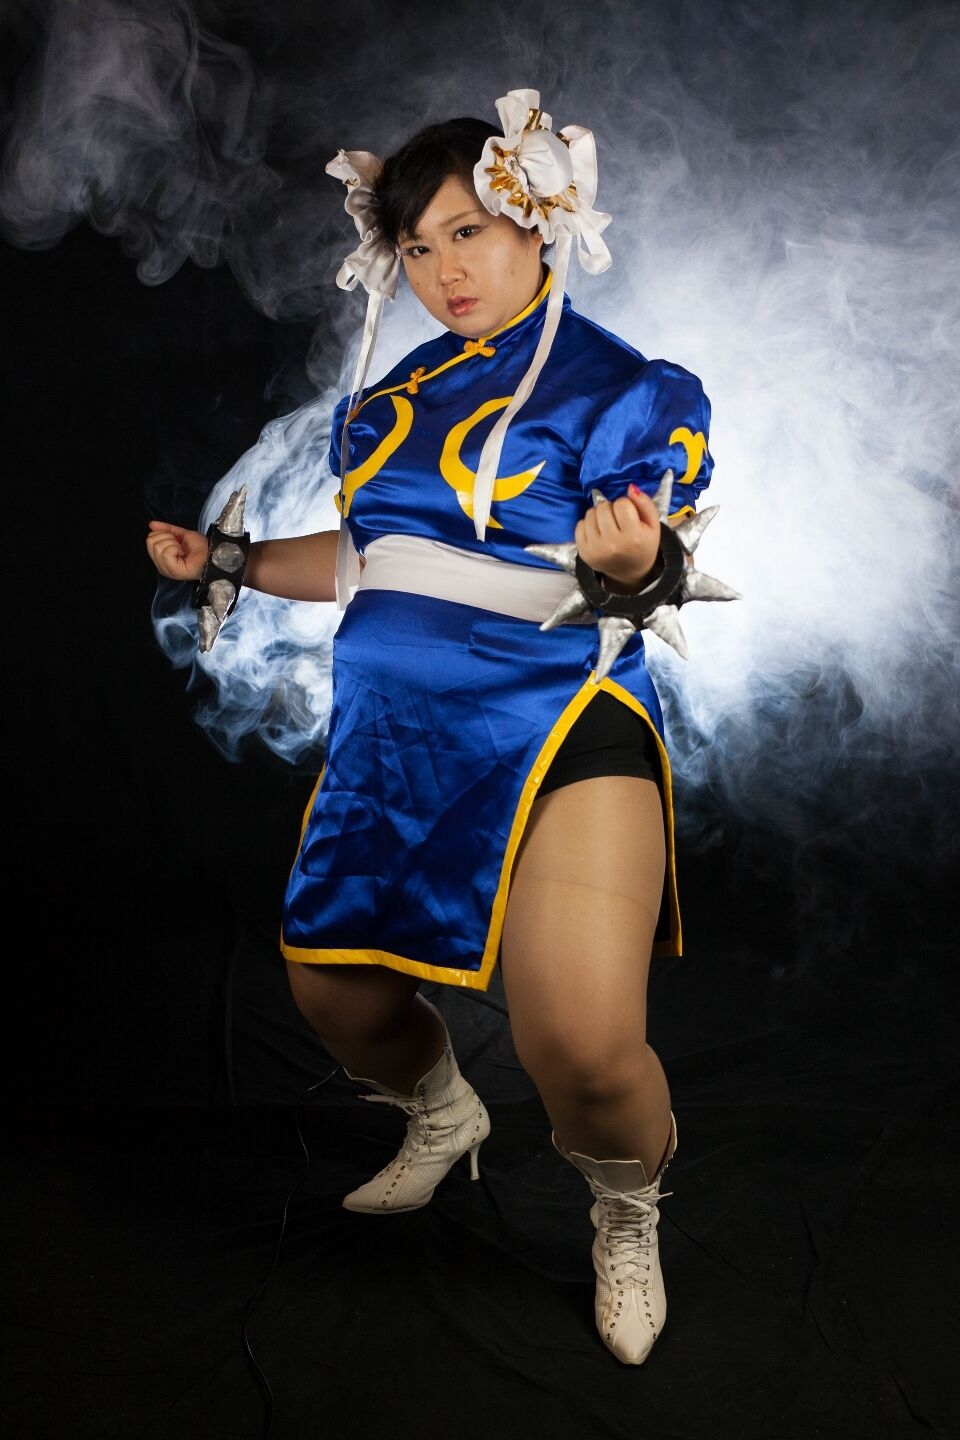 (渡辺さくらん) FIGHT FAT LADY (Sakuran Watanabe) (Mai Shiranui - Fatal Fury) (Chun-Li - Street Fighter) 17